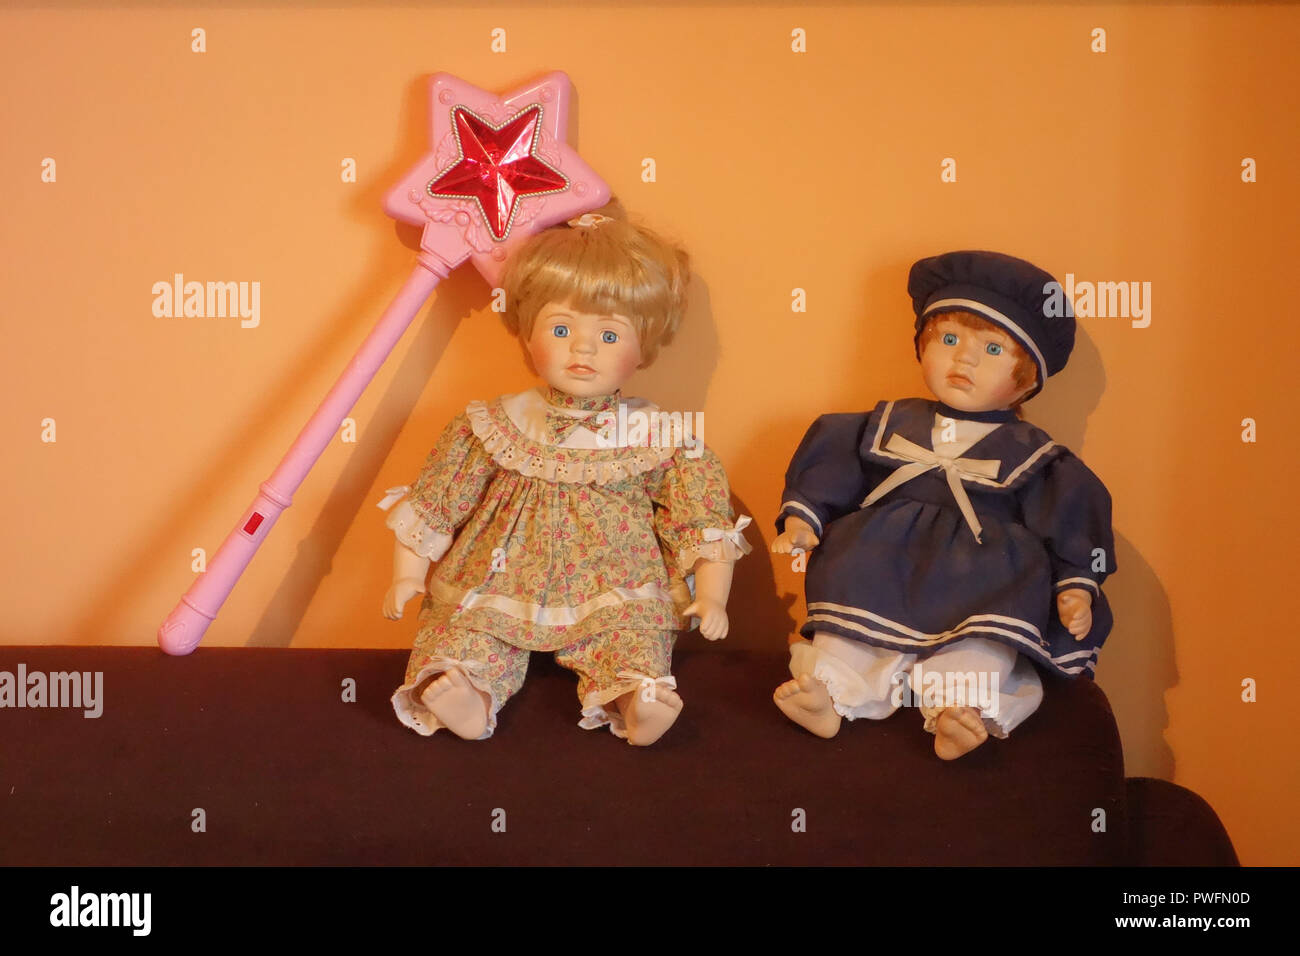 Wien, Gemeindewohnung, kitschige Puppen Foto Stock